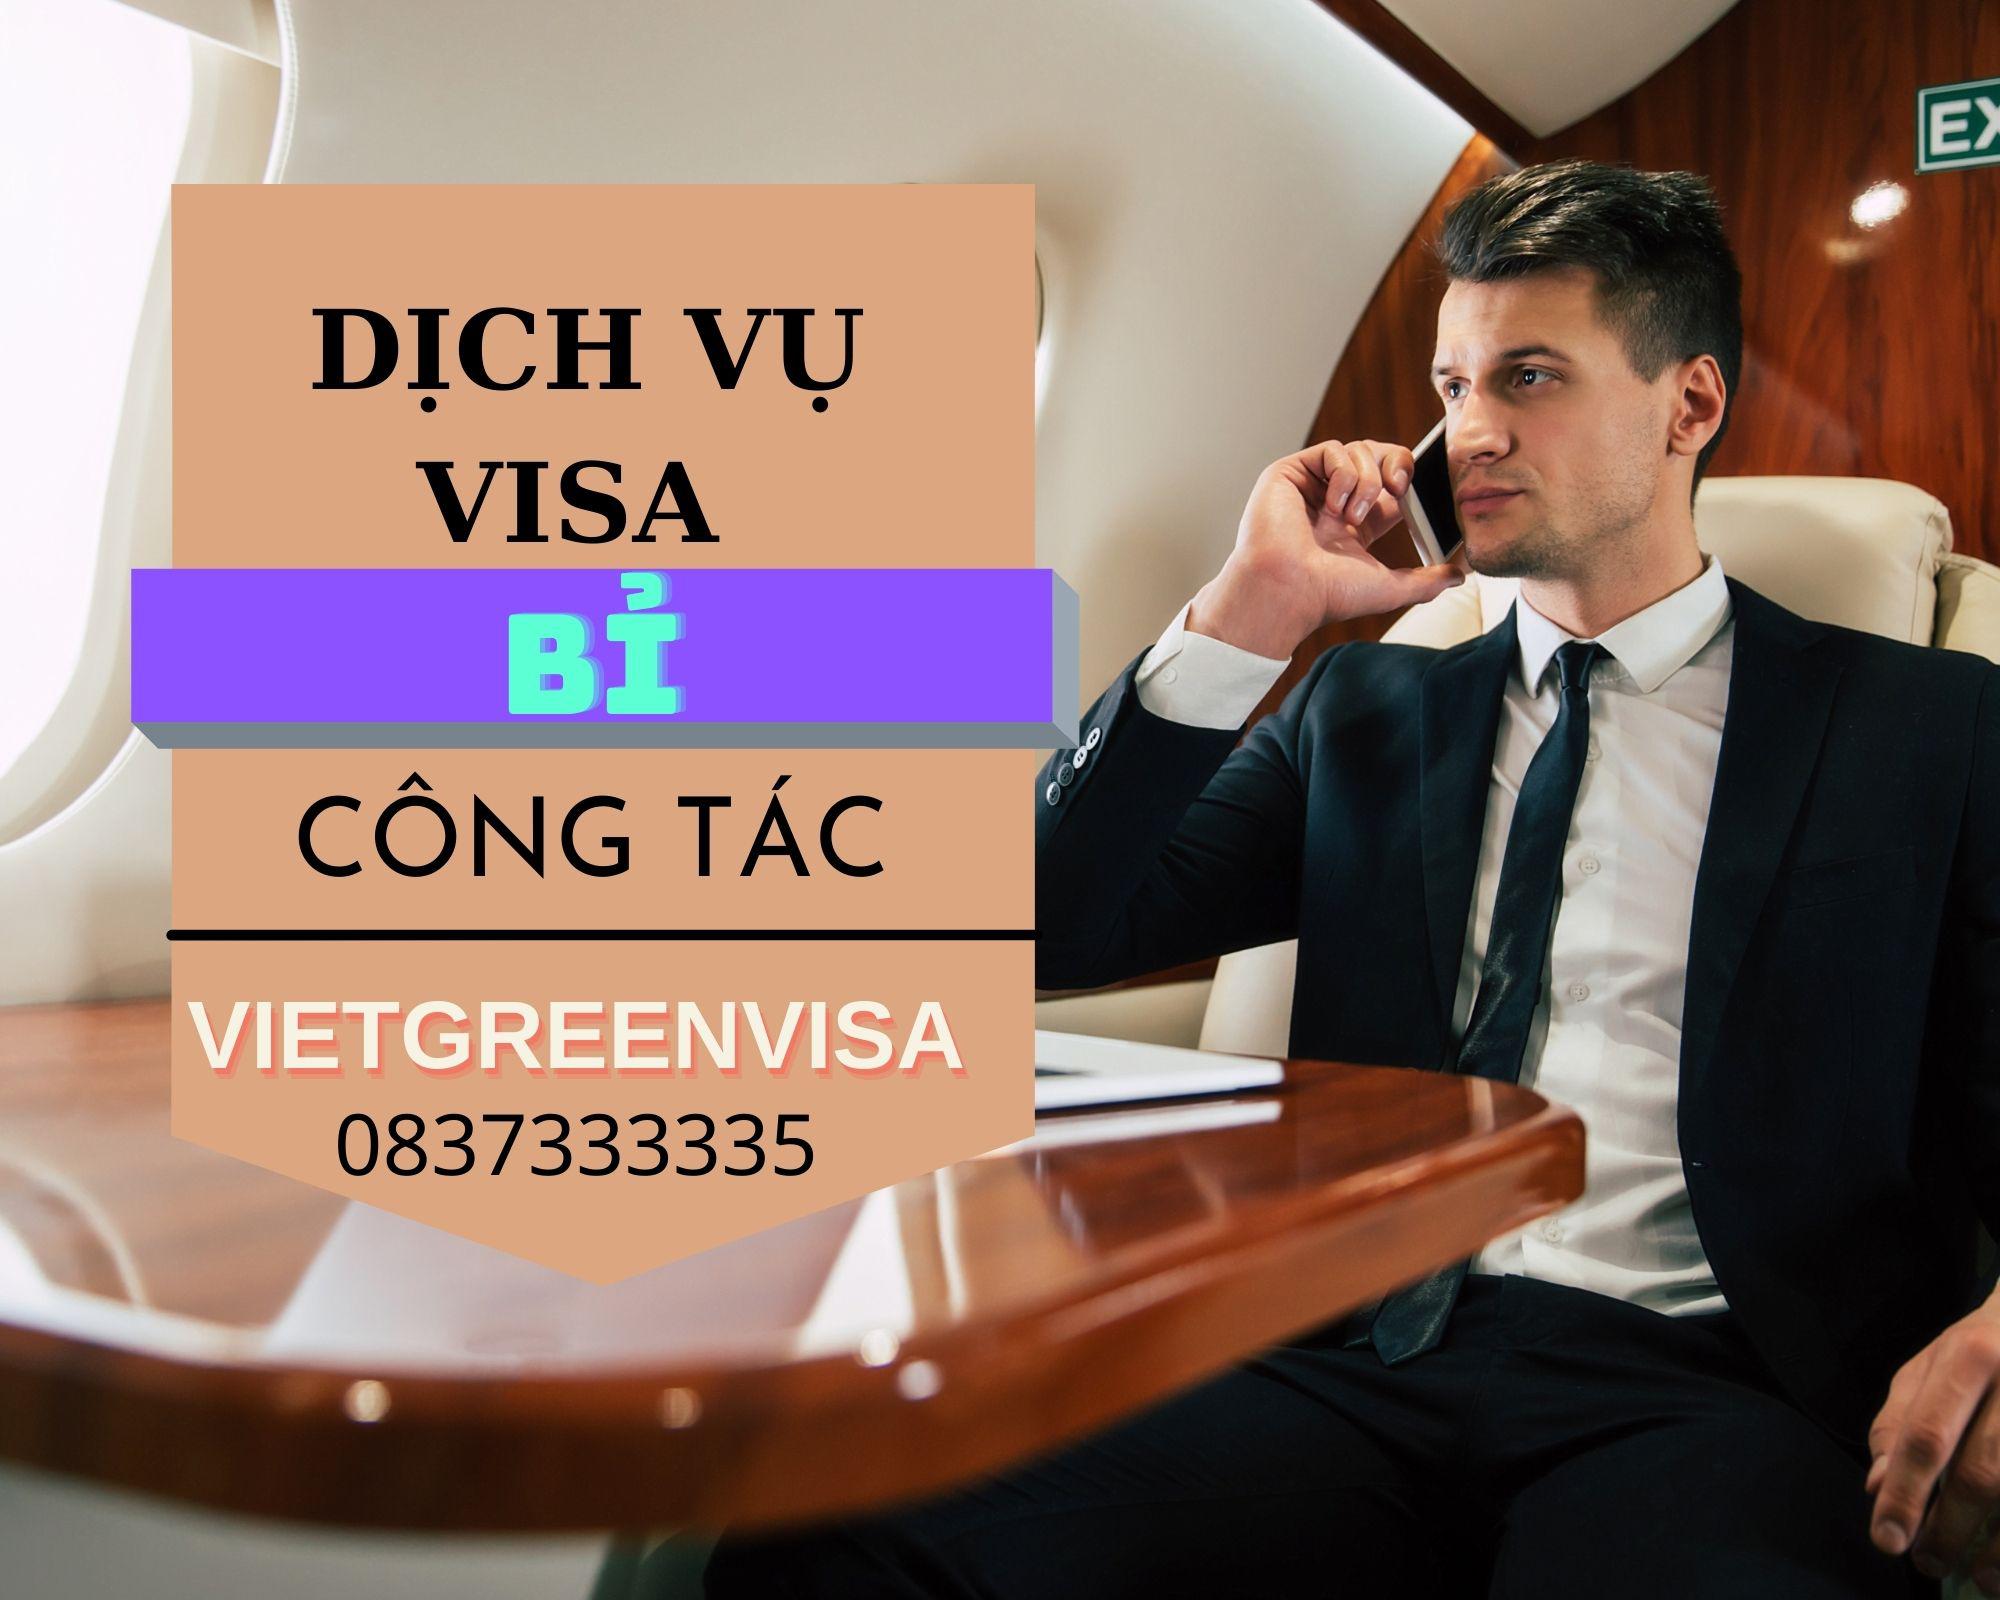 Làm visa đi Bỉ công tác trọn gói | VIET GREEN VISA